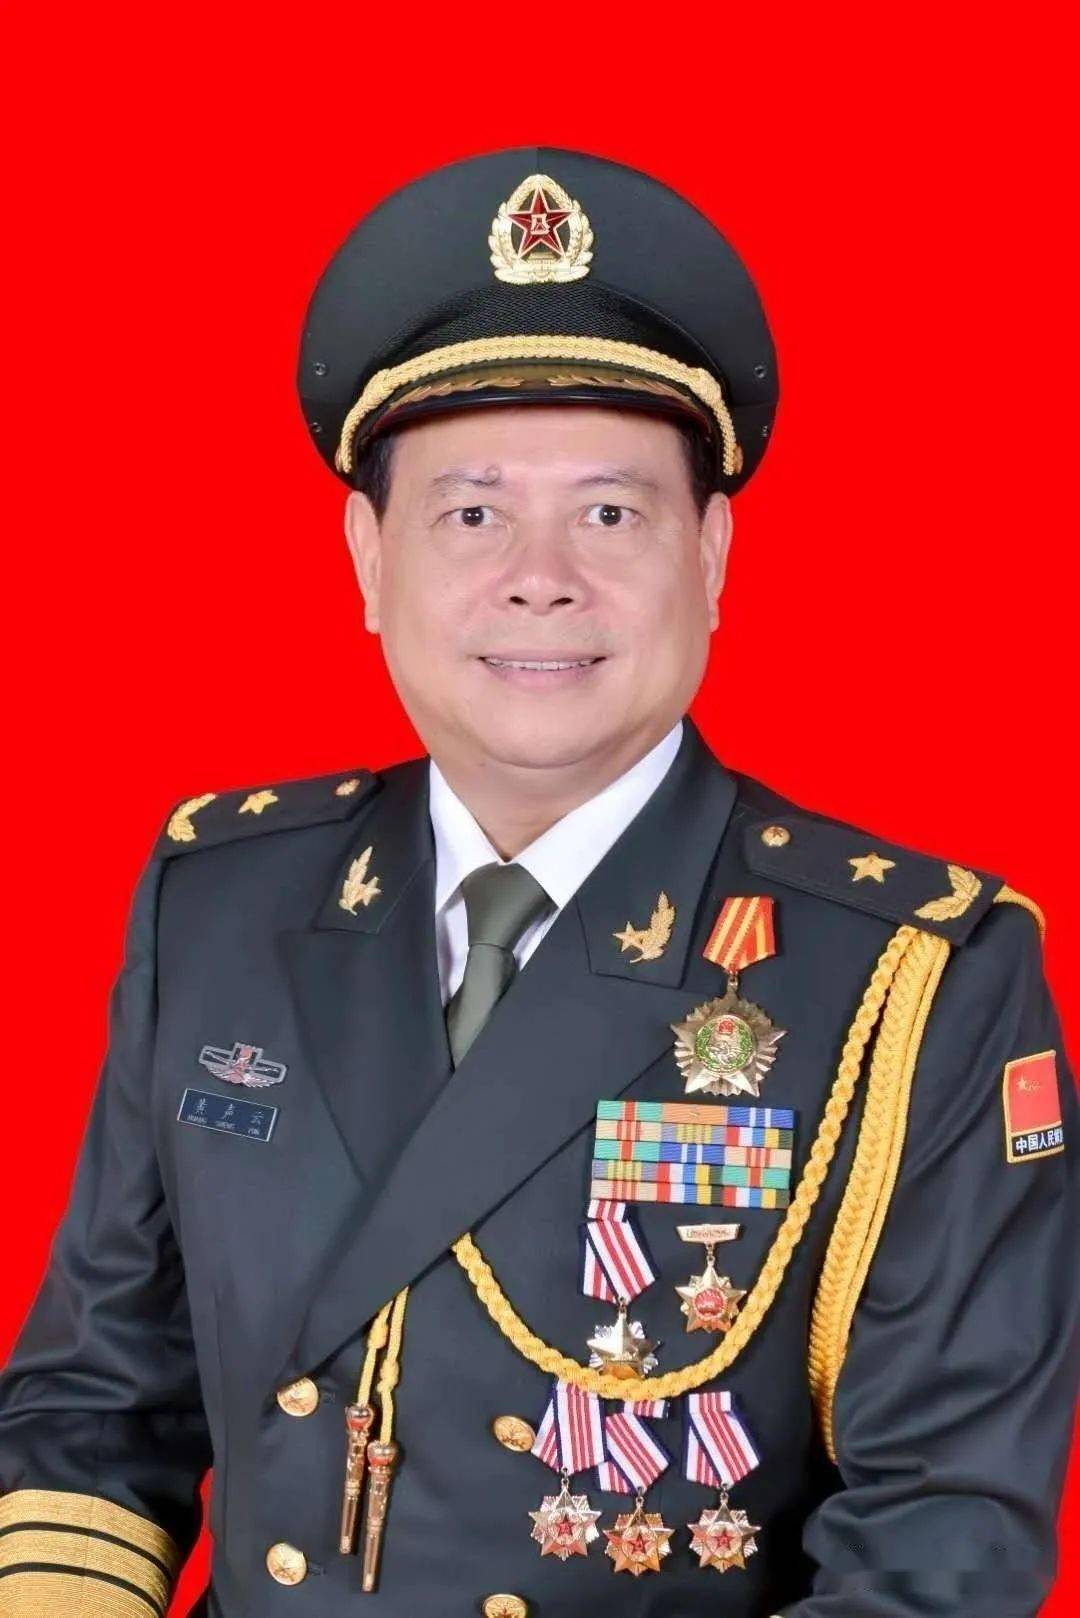 黄声云,广东大埔县人,1953年12月生,曾任广州军区保卫部部长.